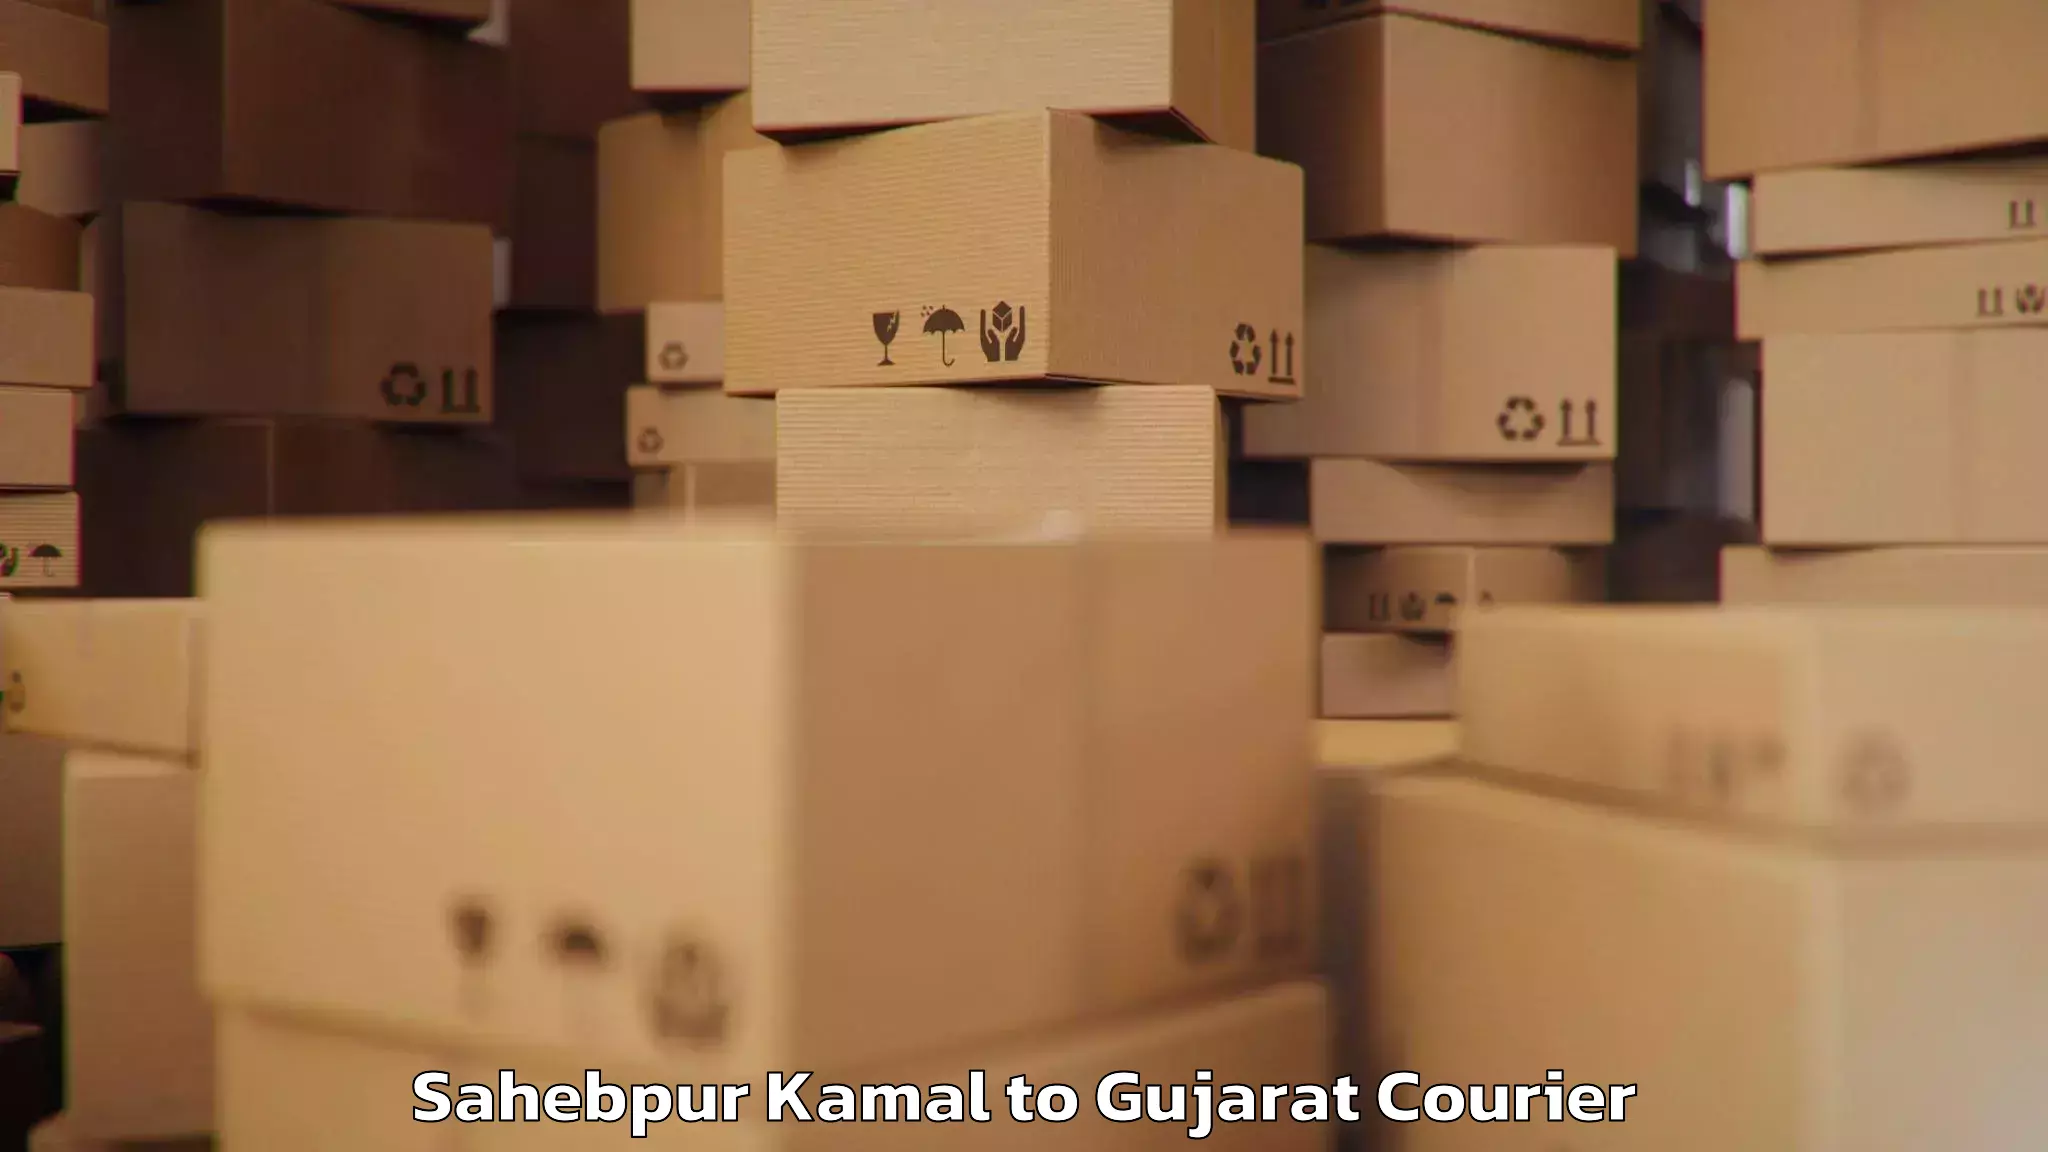 Baggage transport estimate Sahebpur Kamal to Ahmedabad